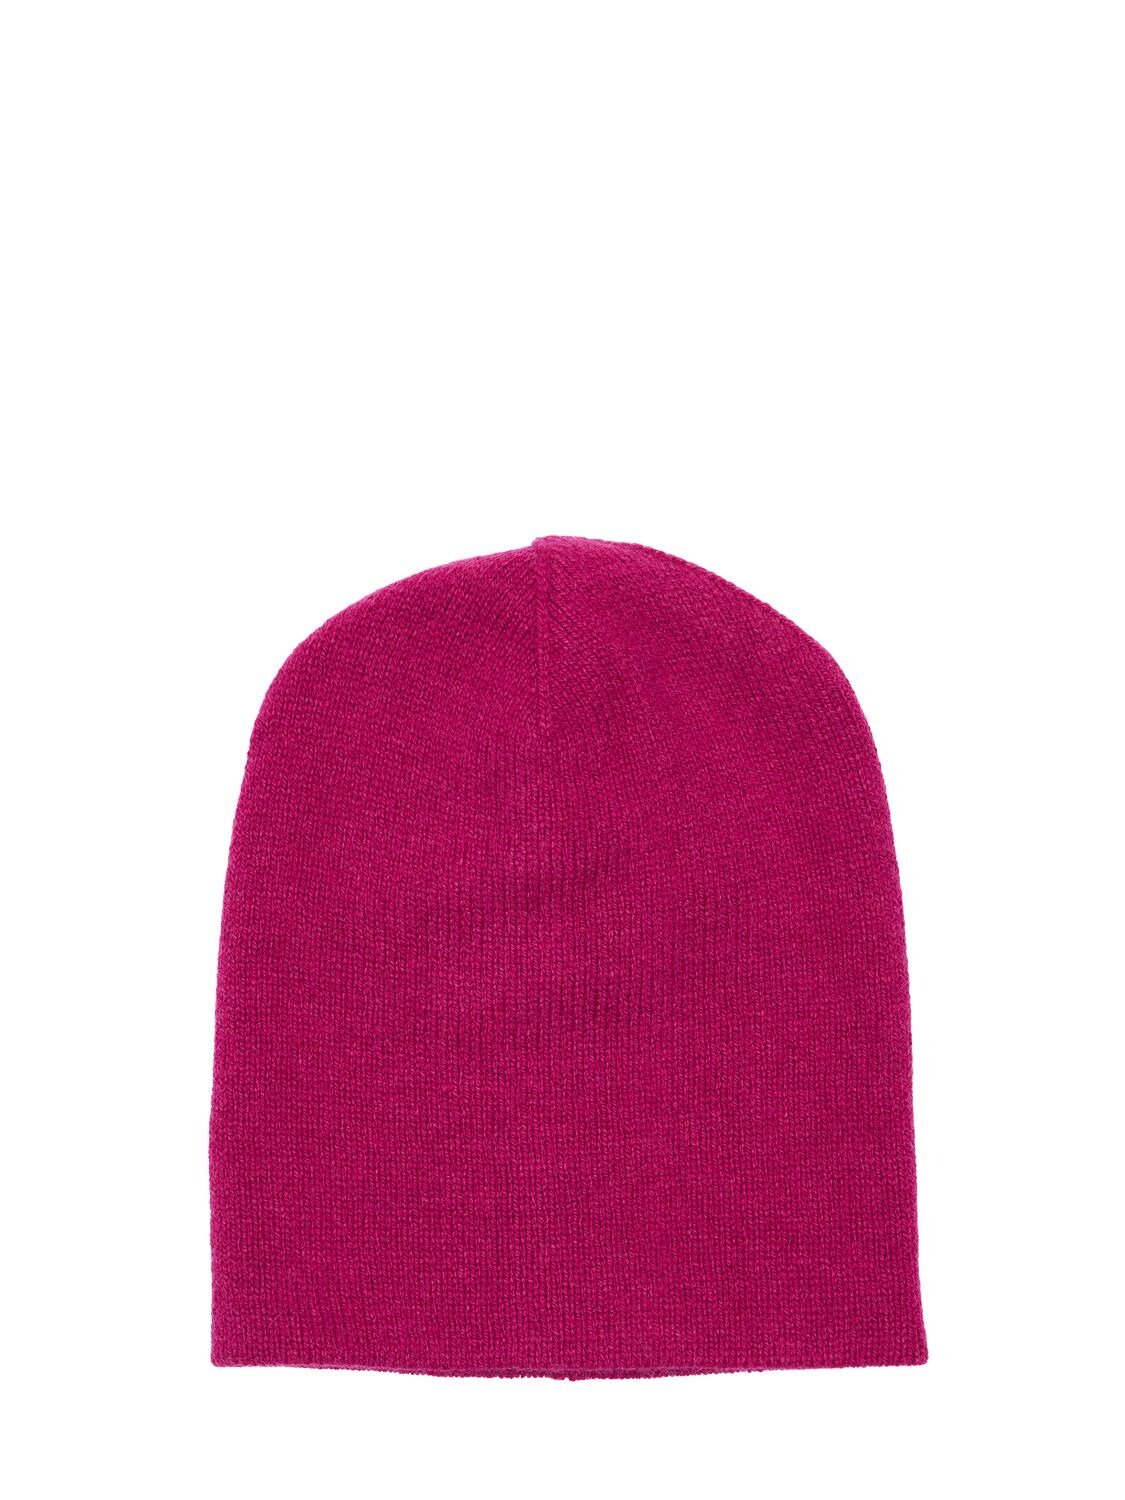 Elfie Cashmere Knit Beanie Hat